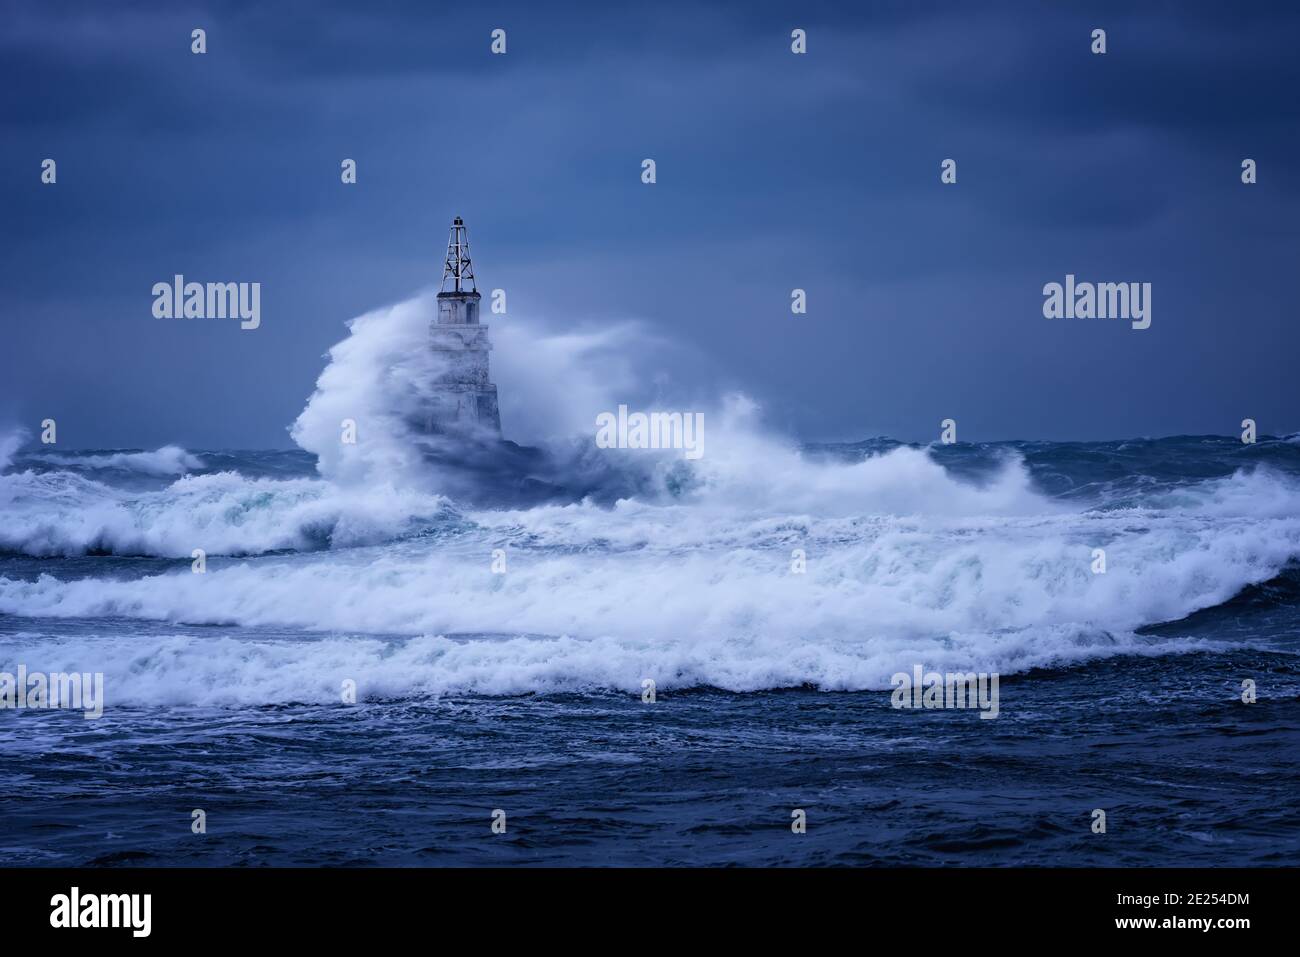 Grande vague contre le vieux phare dans le port d'Ahtopol, la mer Noire, la Bulgarie sur une journée de tempête de moody. Danger, scène dramatique. Banque D'Images